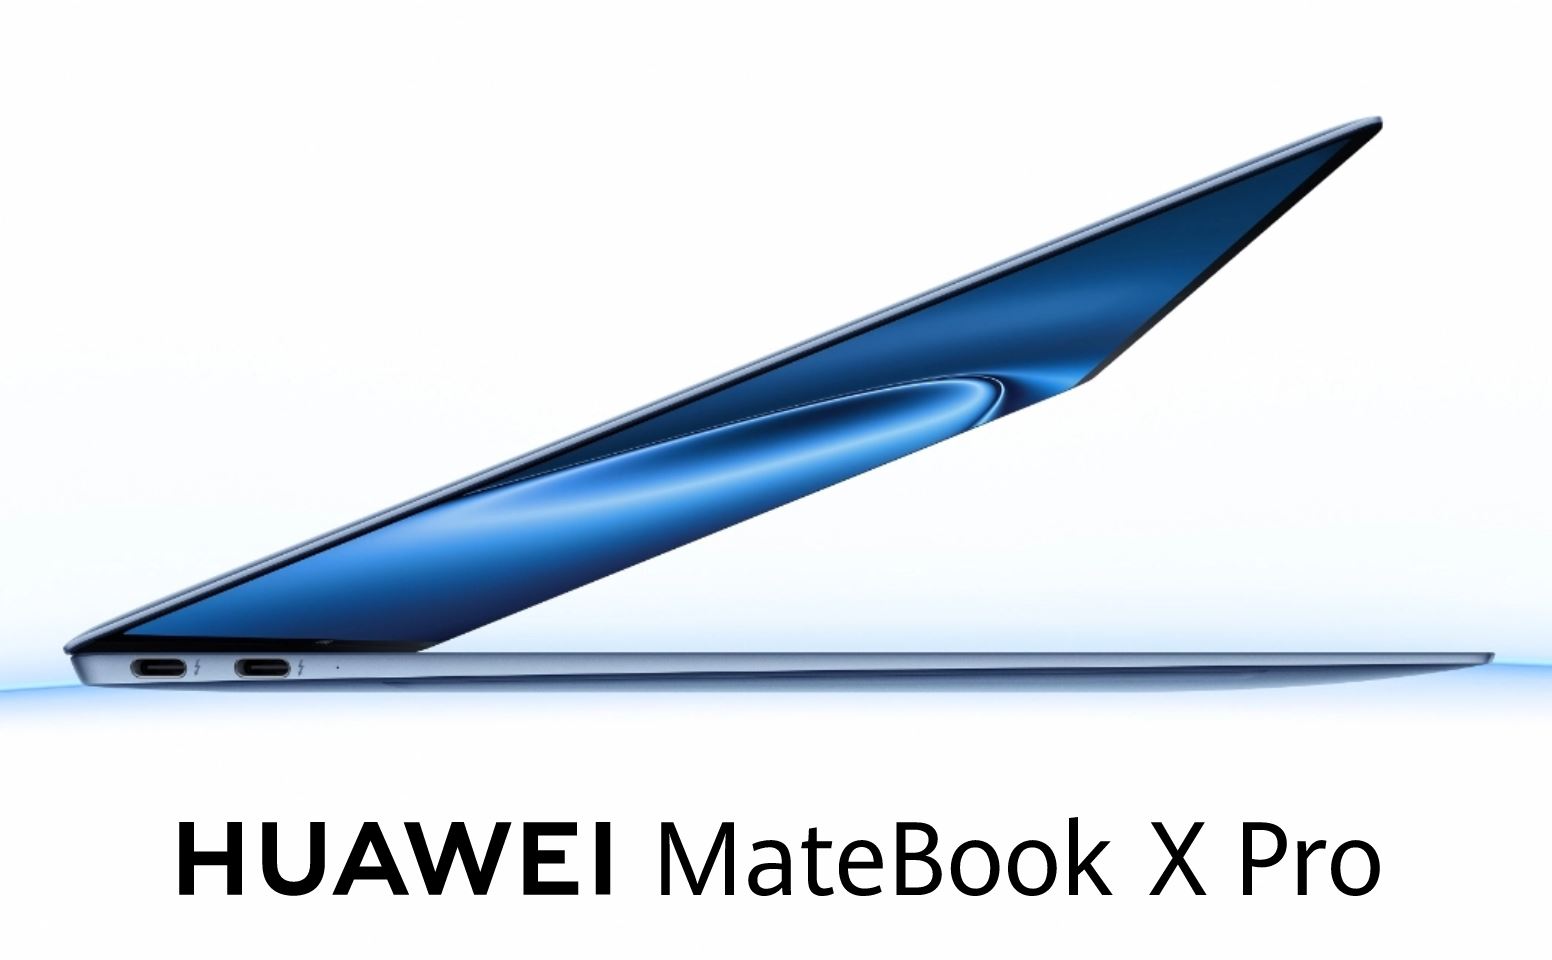 Amerikaanse wetgevers bekritiseren regering Biden over nieuwe Huawei-laptop